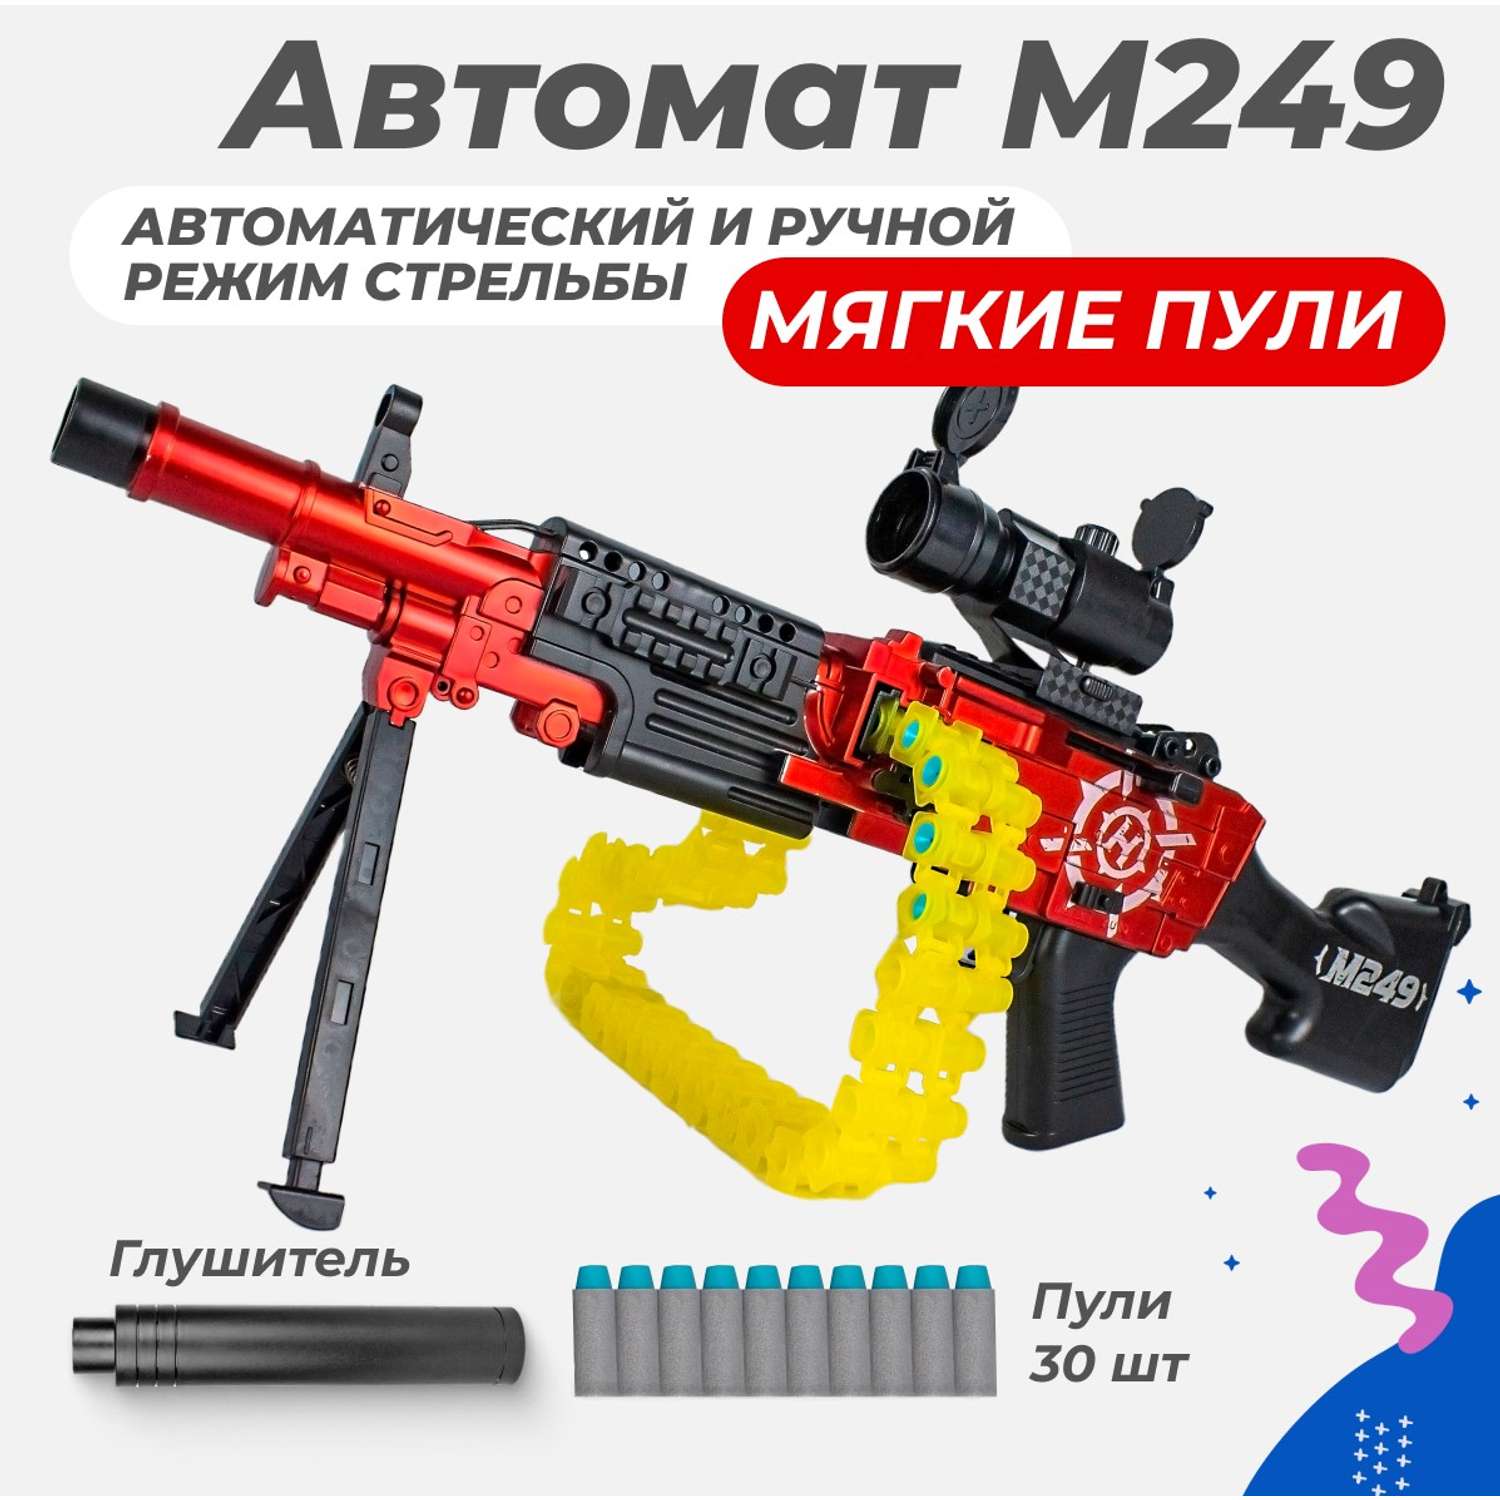 Сюжетно-ролевые игрушки Story Game M249 DR038A - фото 2